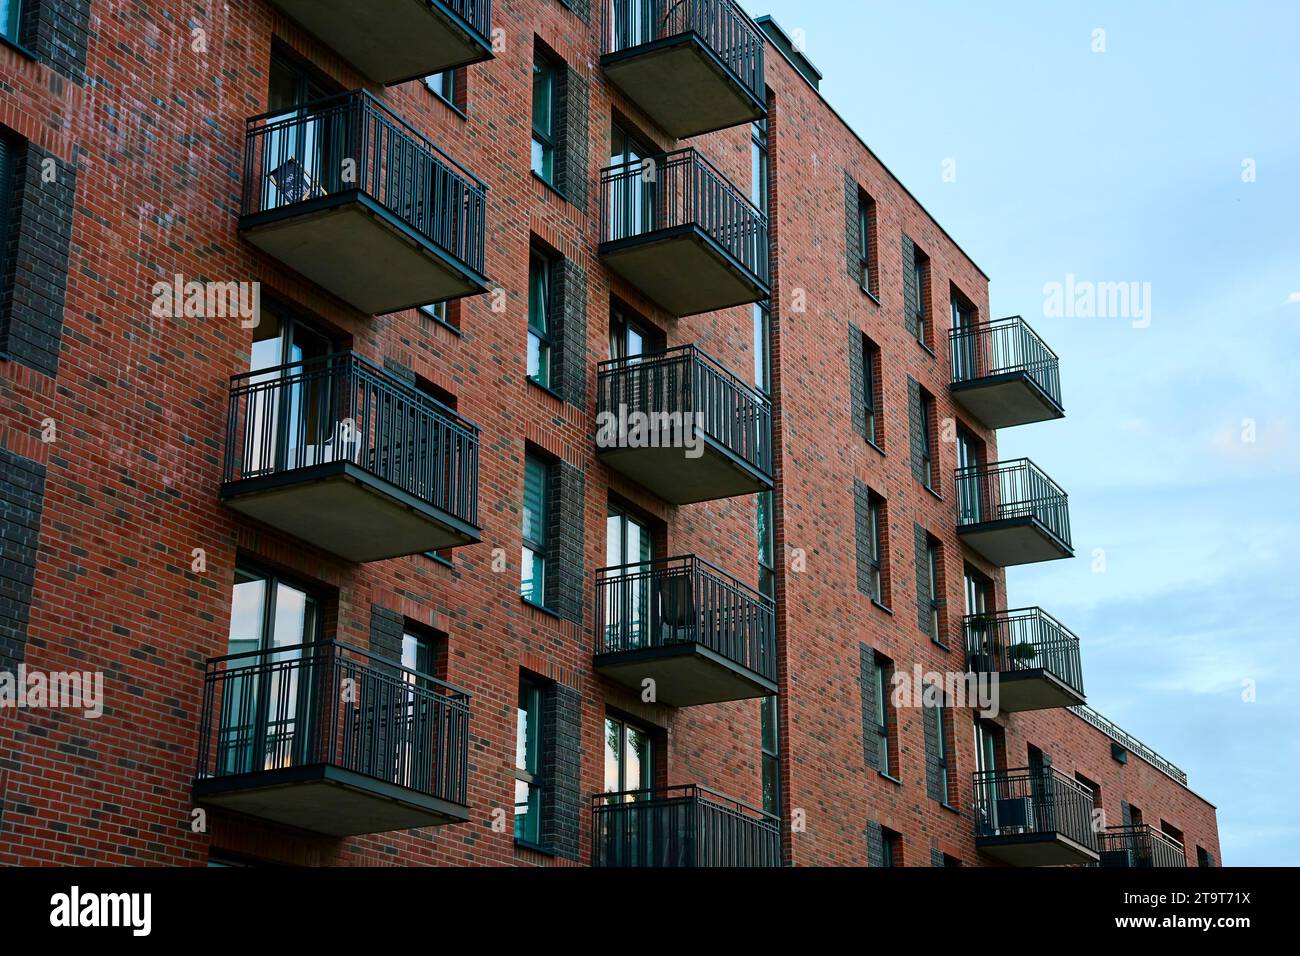 Façade de bâtiment résidentiel avec balcons et fenêtres. Architecture urbaine moderne. Immeuble d'appartements en briques rouges Banque D'Images